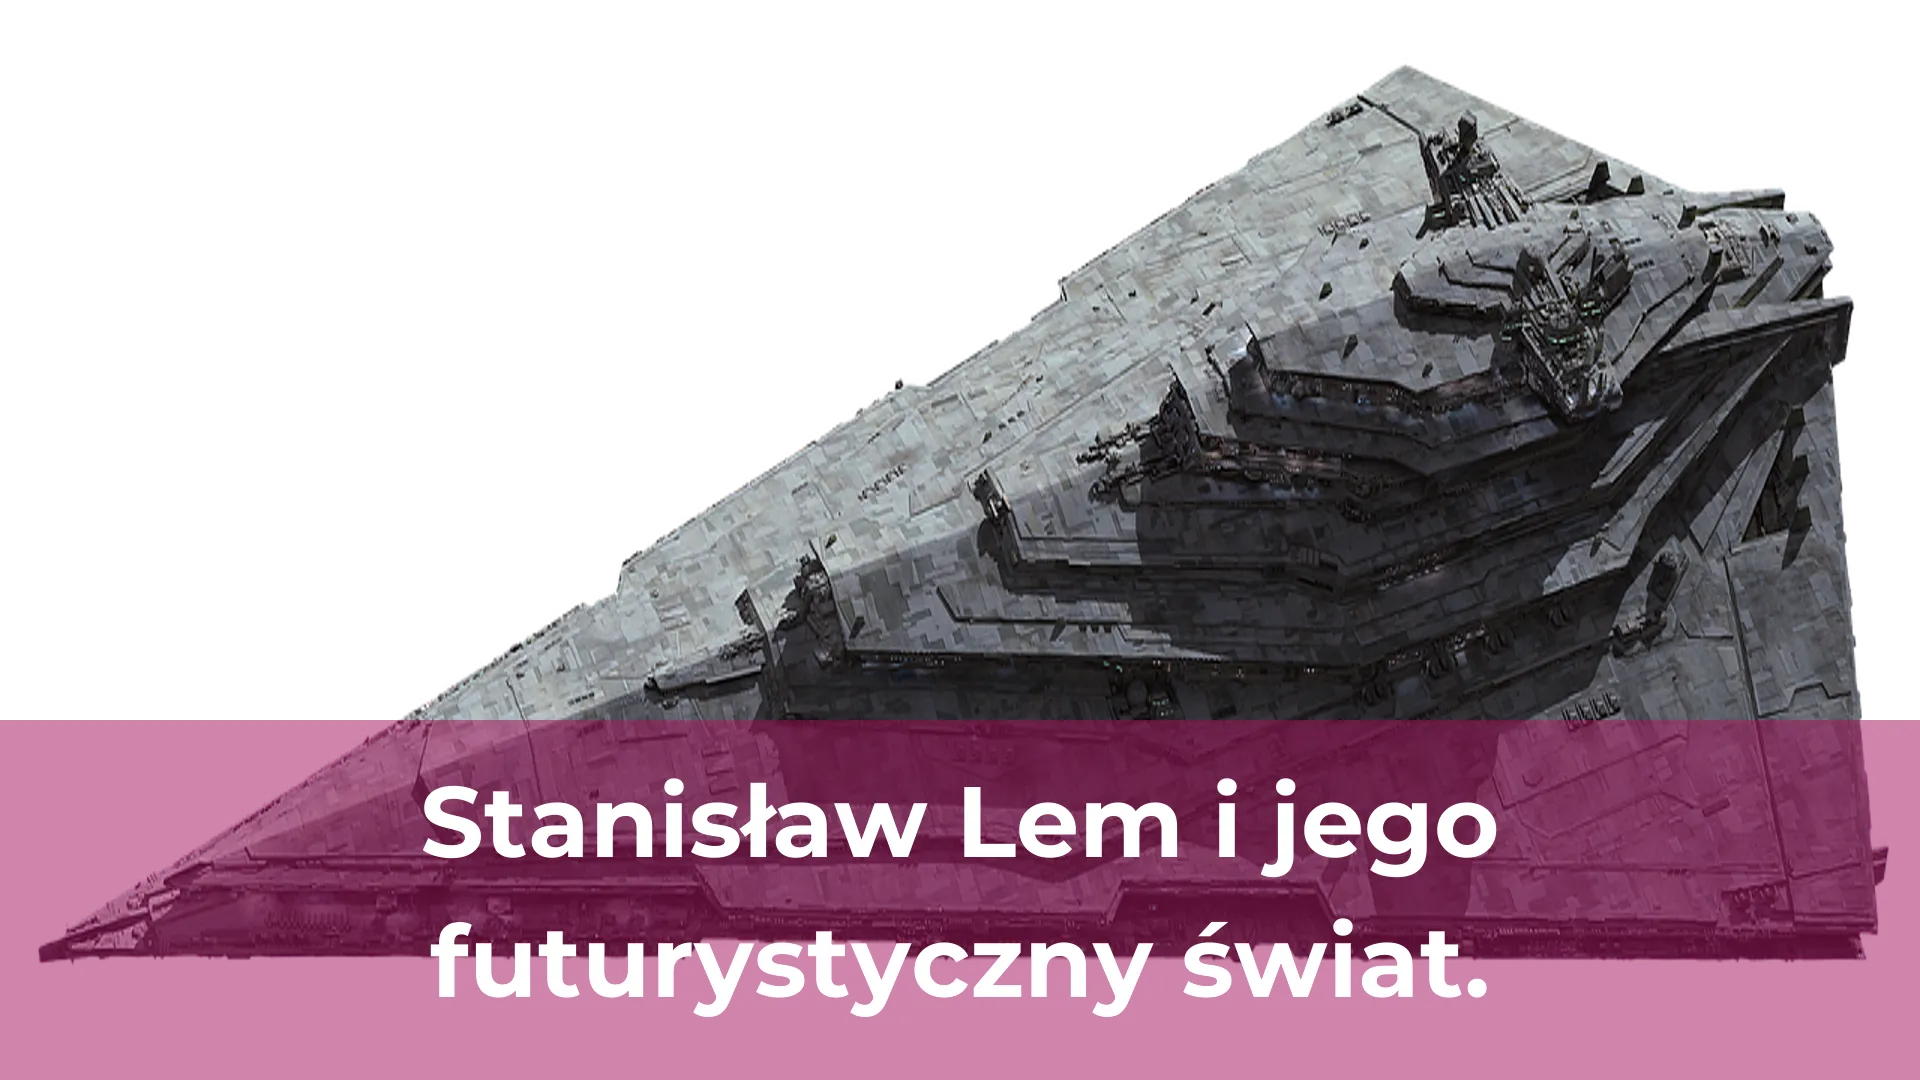 Stanisław lem i jego futurystyczny świat